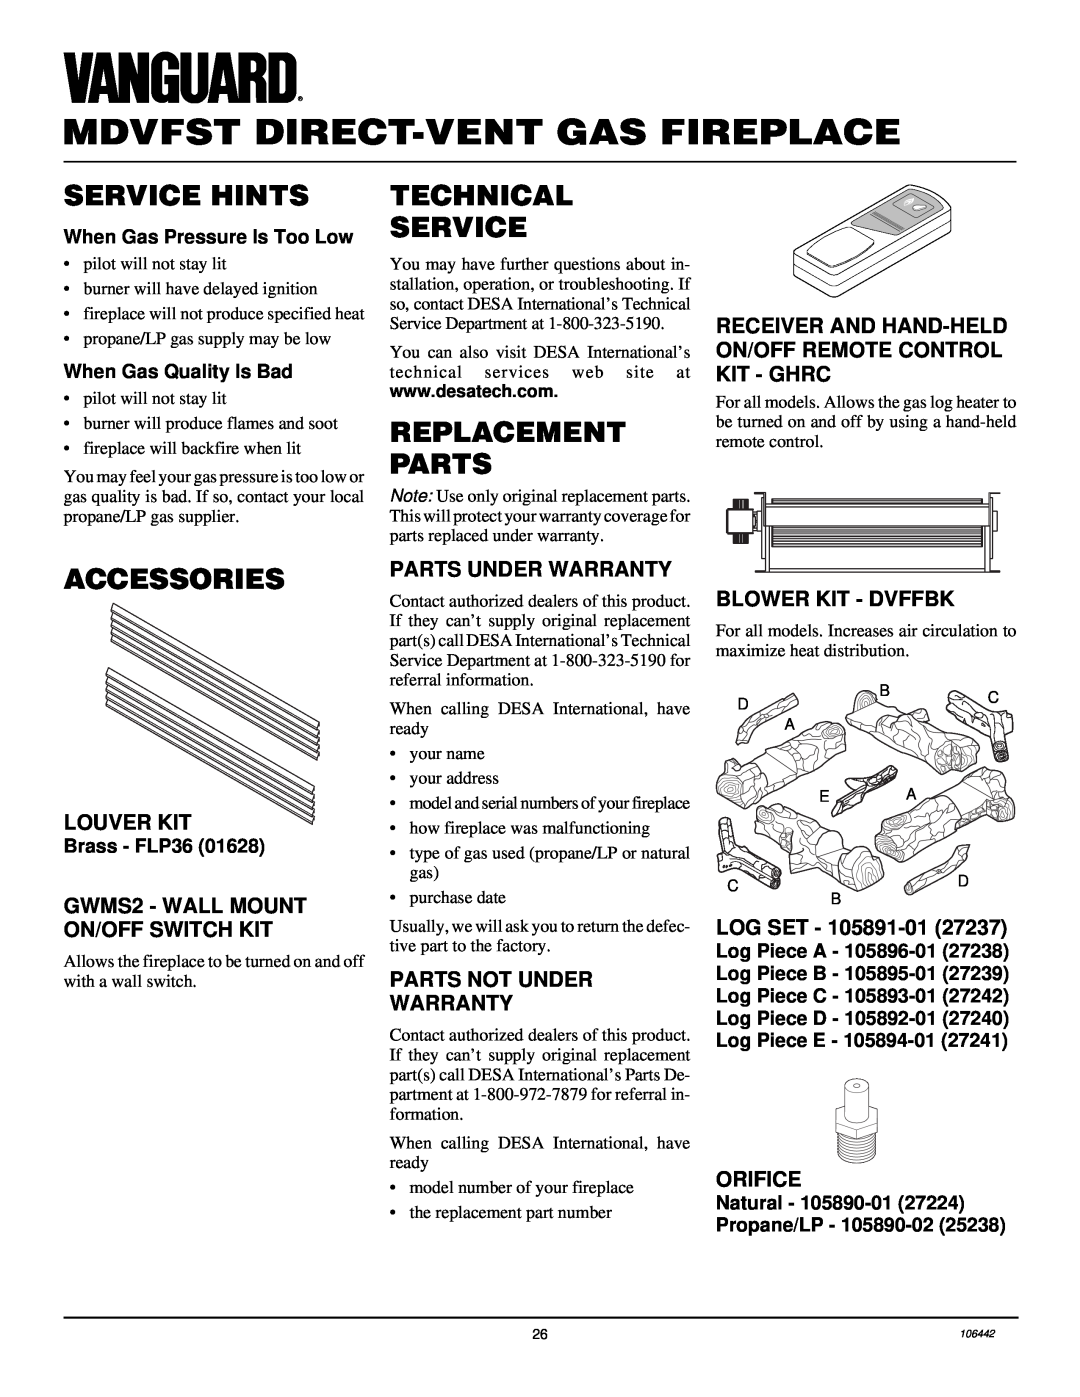 Desa MDVFST Service Hints, Technical Service, Replacement Parts, Accessories, Louver Kit, Parts Under Warranty, Log Set 